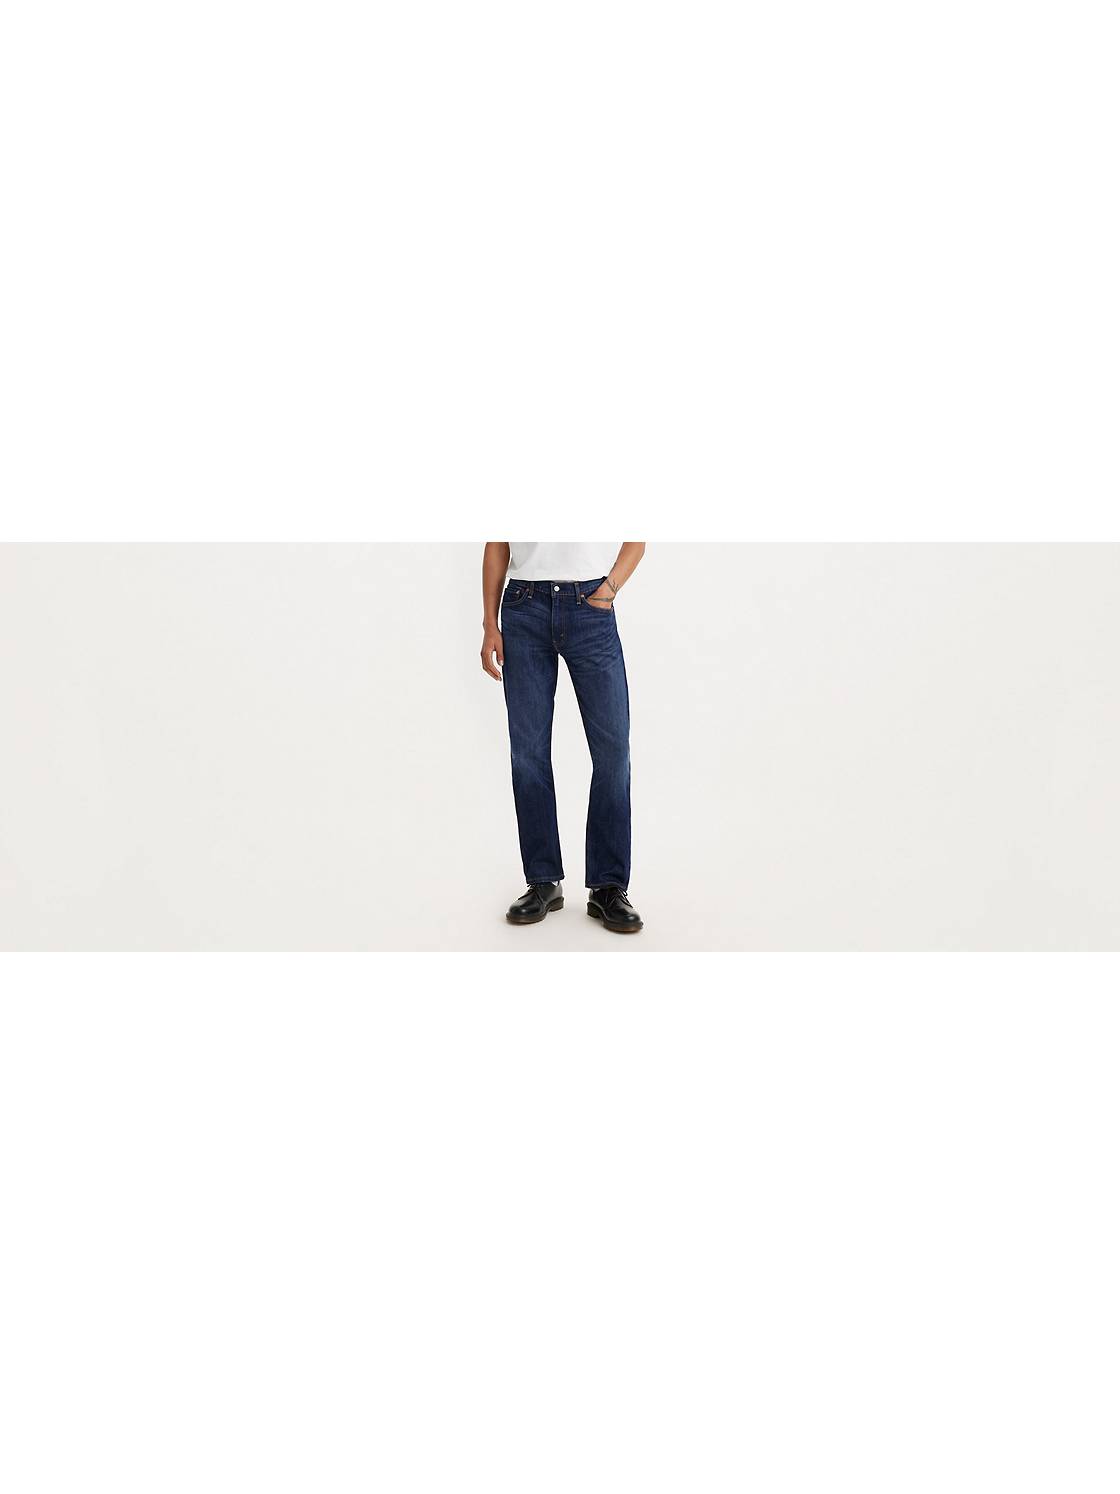 Louis Vuitton Men LV Men's Slim Straight jeans vd12vn. Description